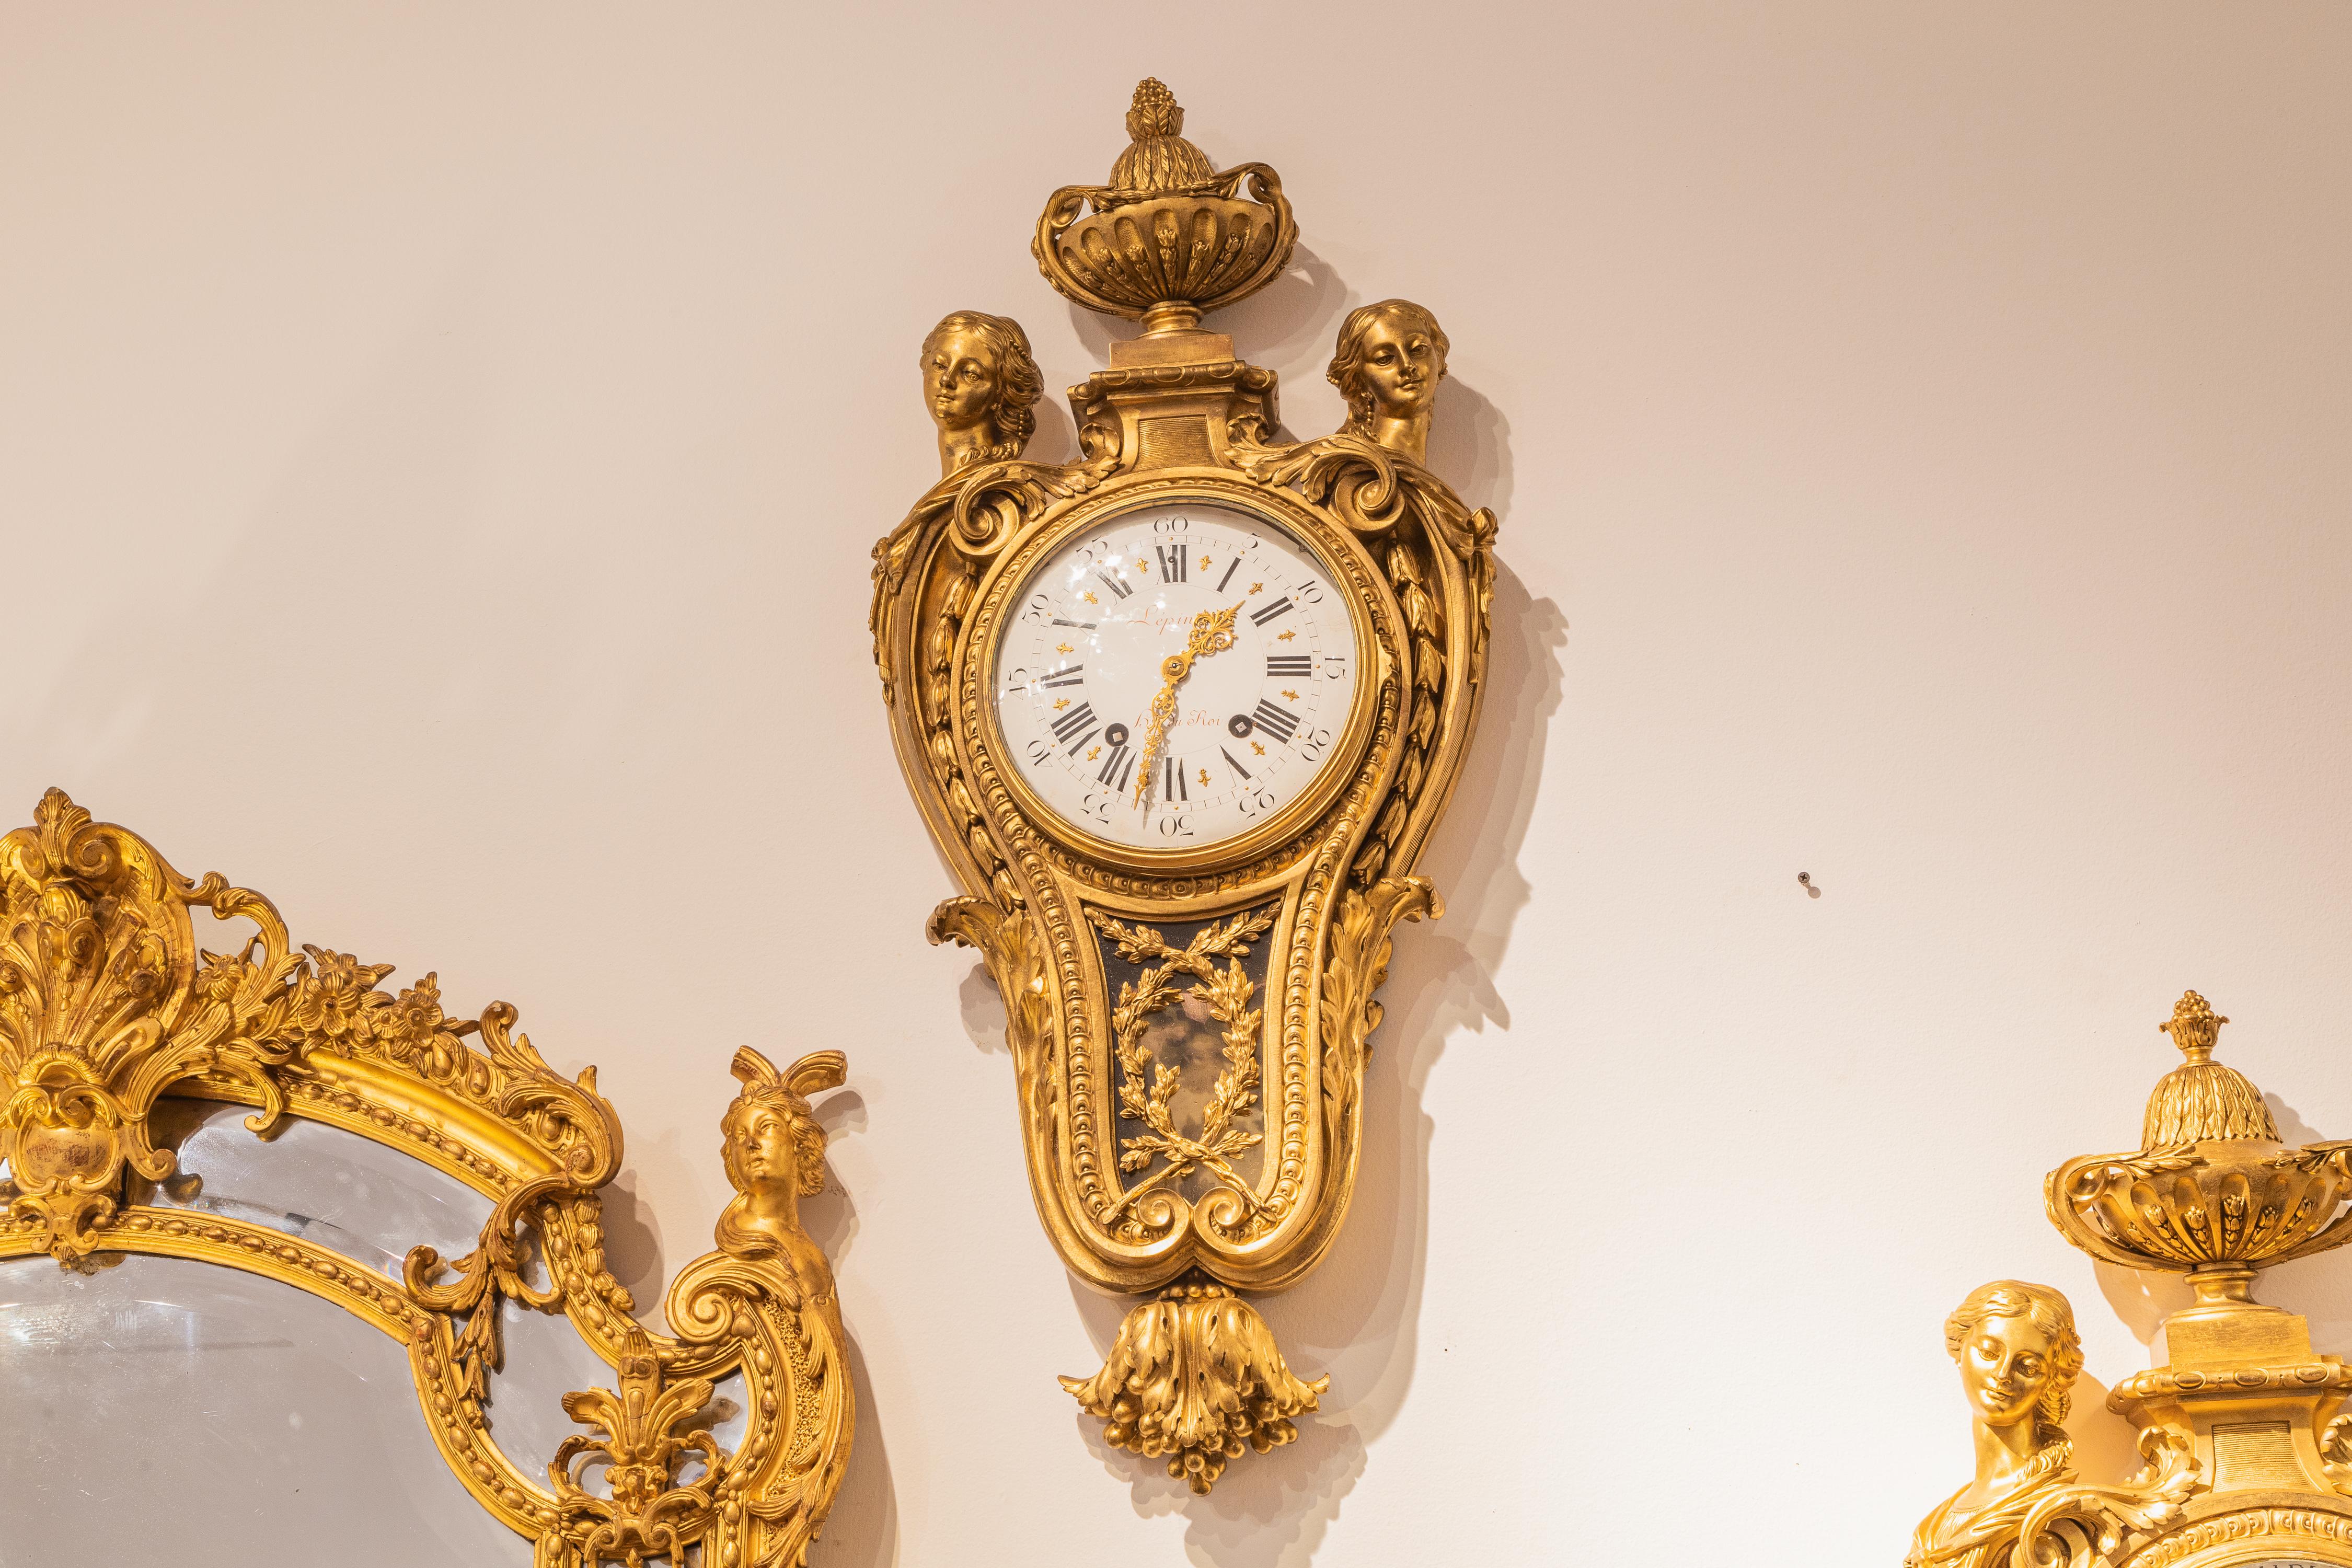 Ein schönes und seltenes Paar französischer vergoldeter Bronzeuhren und Barometer aus dem späten 18. bis frühen 19. Jahrhundert von Jean Antoine Lepine. 

Ernennung zum König 
Jean Lepine zog im Jahr 1774 im Alter von 24 Jahren nach Paris. Er  war